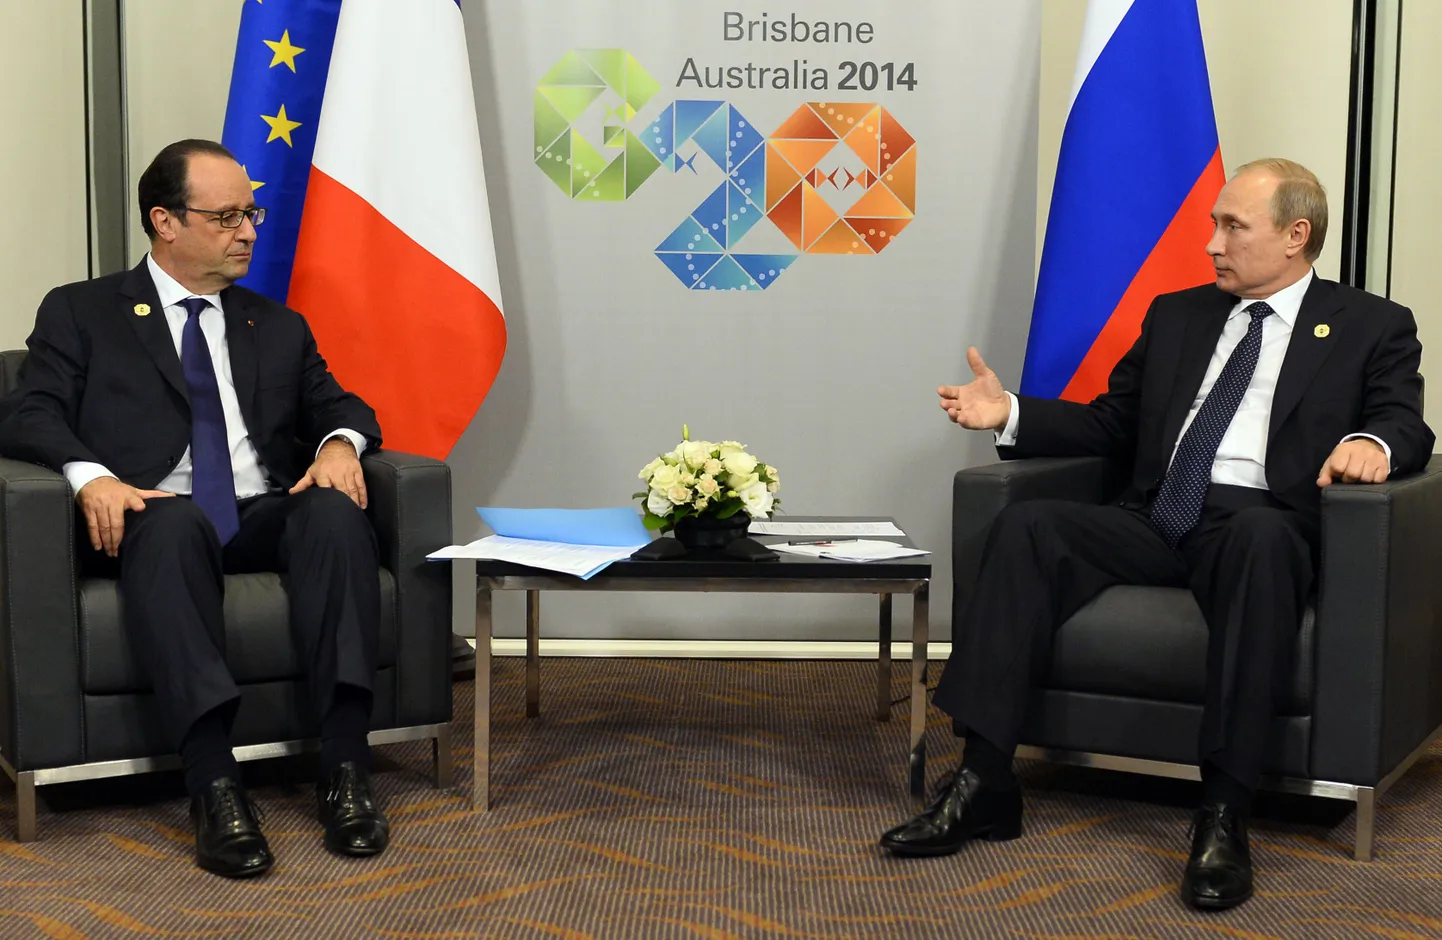 Prantsuse president François Hollande kohtus oma Vene kolleegi Vladimir Putiniga ka möödunud kuul Austraalias G20 tippkohtumisel.